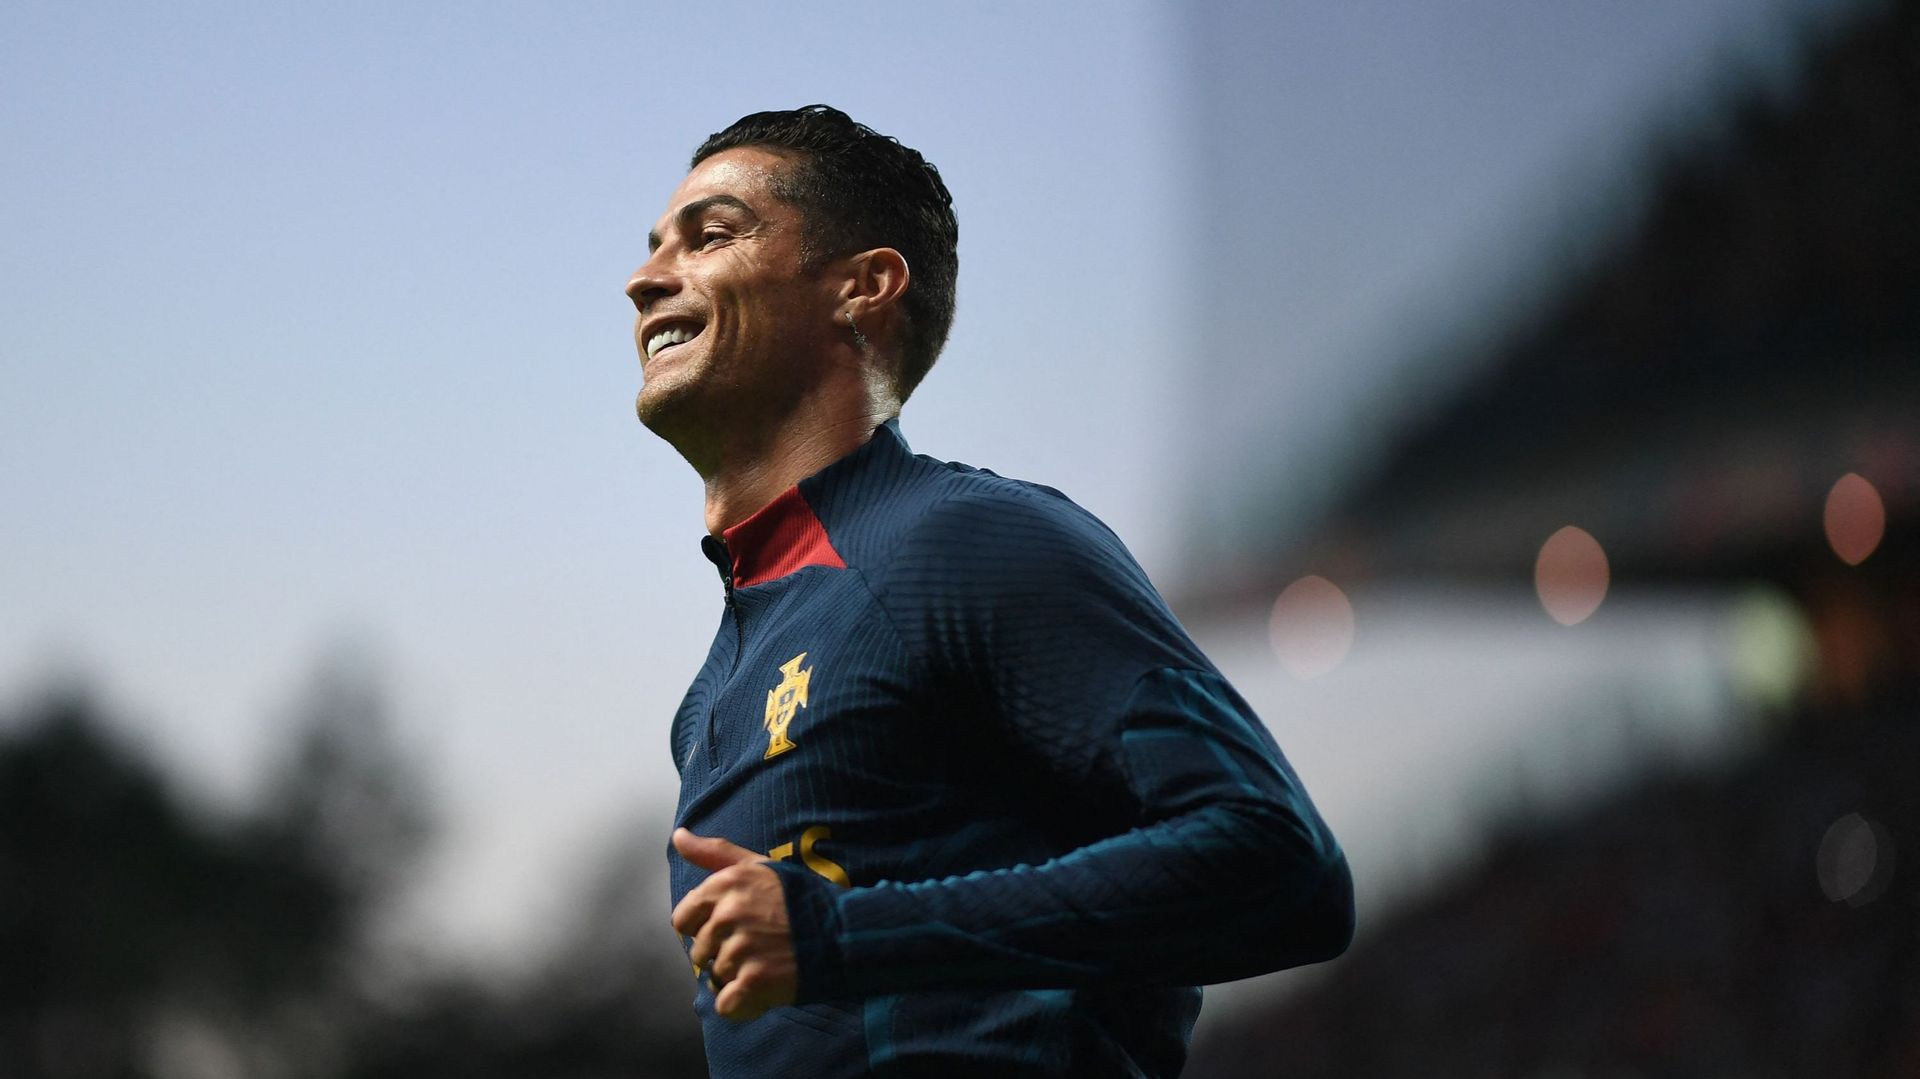 Emmenée par l’incontournable Cristiano Ronaldo, l’équipe de Portugal sera sans surprise au Mondial-2022, selon la liste de 26 joueurs dévoilée jeudi par le sélectionneur Fernando Santos où ne figurent ni Joao Moutinho, 2e joueur le plus capé de la Seleçao